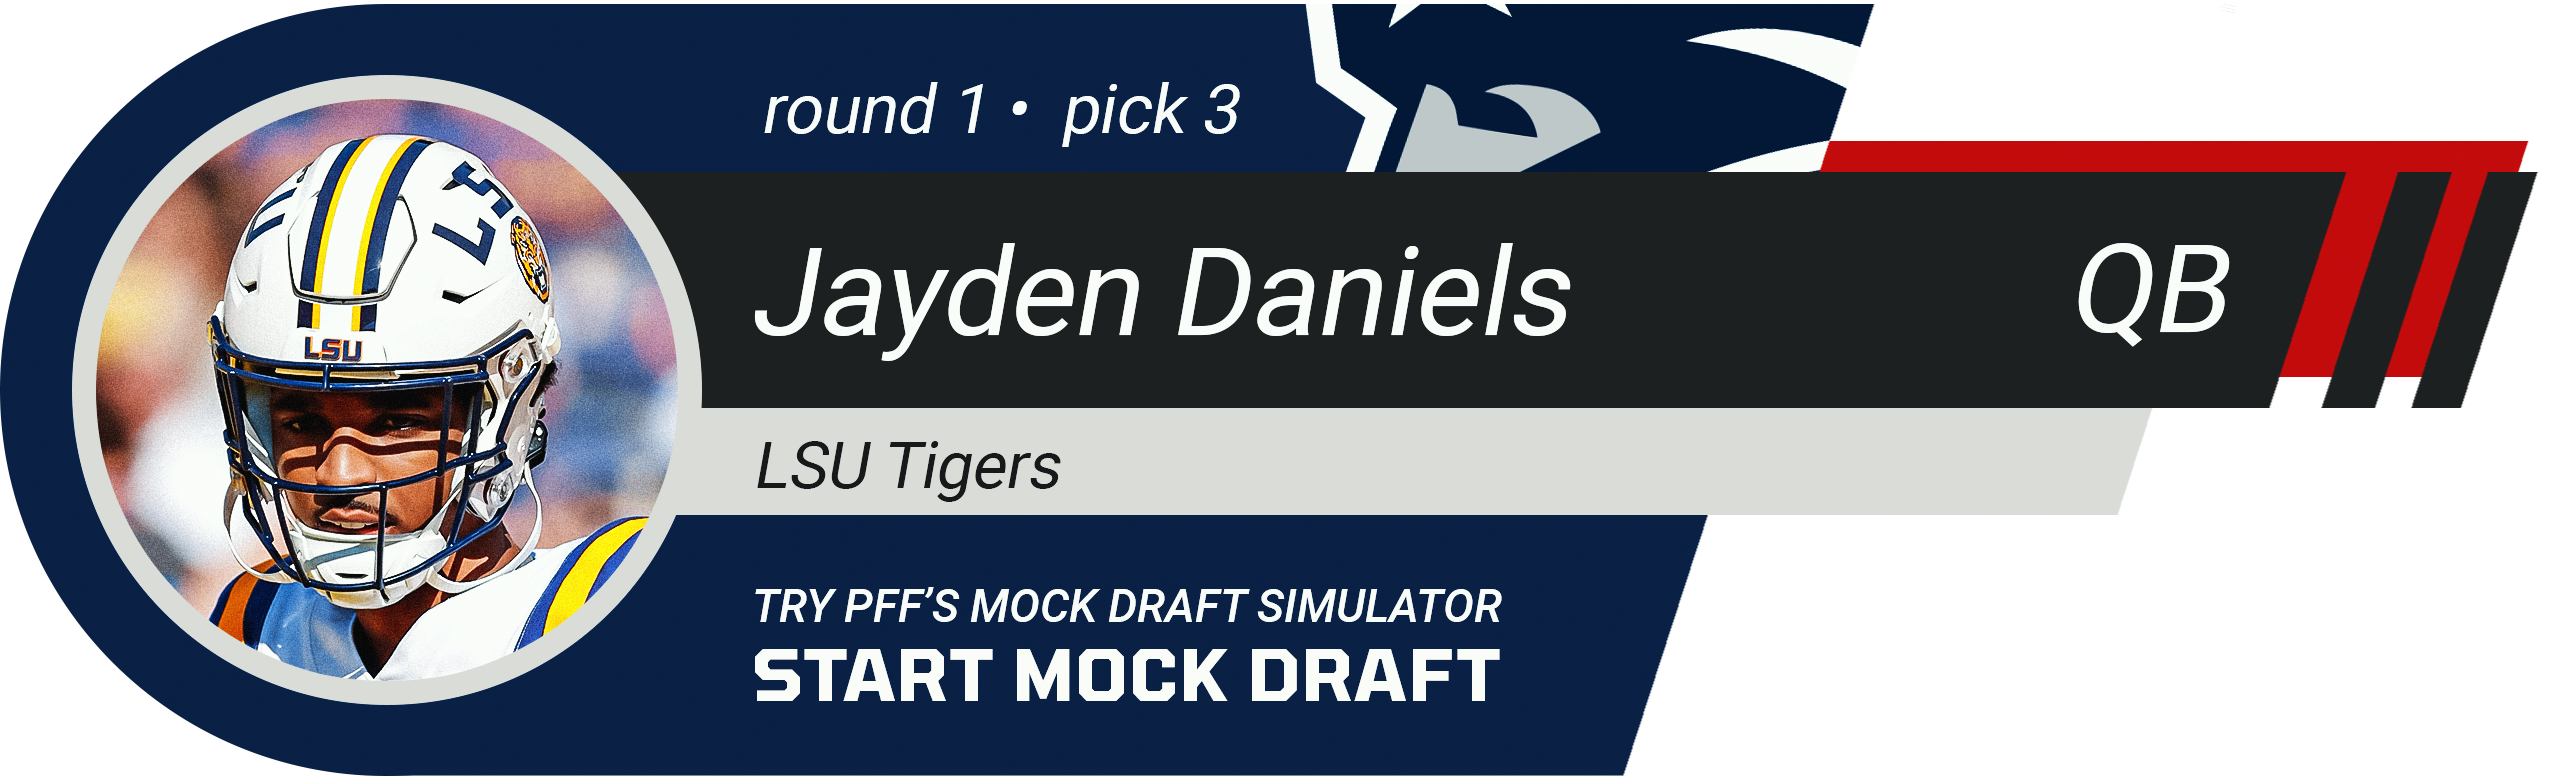 New England Patriots: Jayden Daniels, QB, LSU